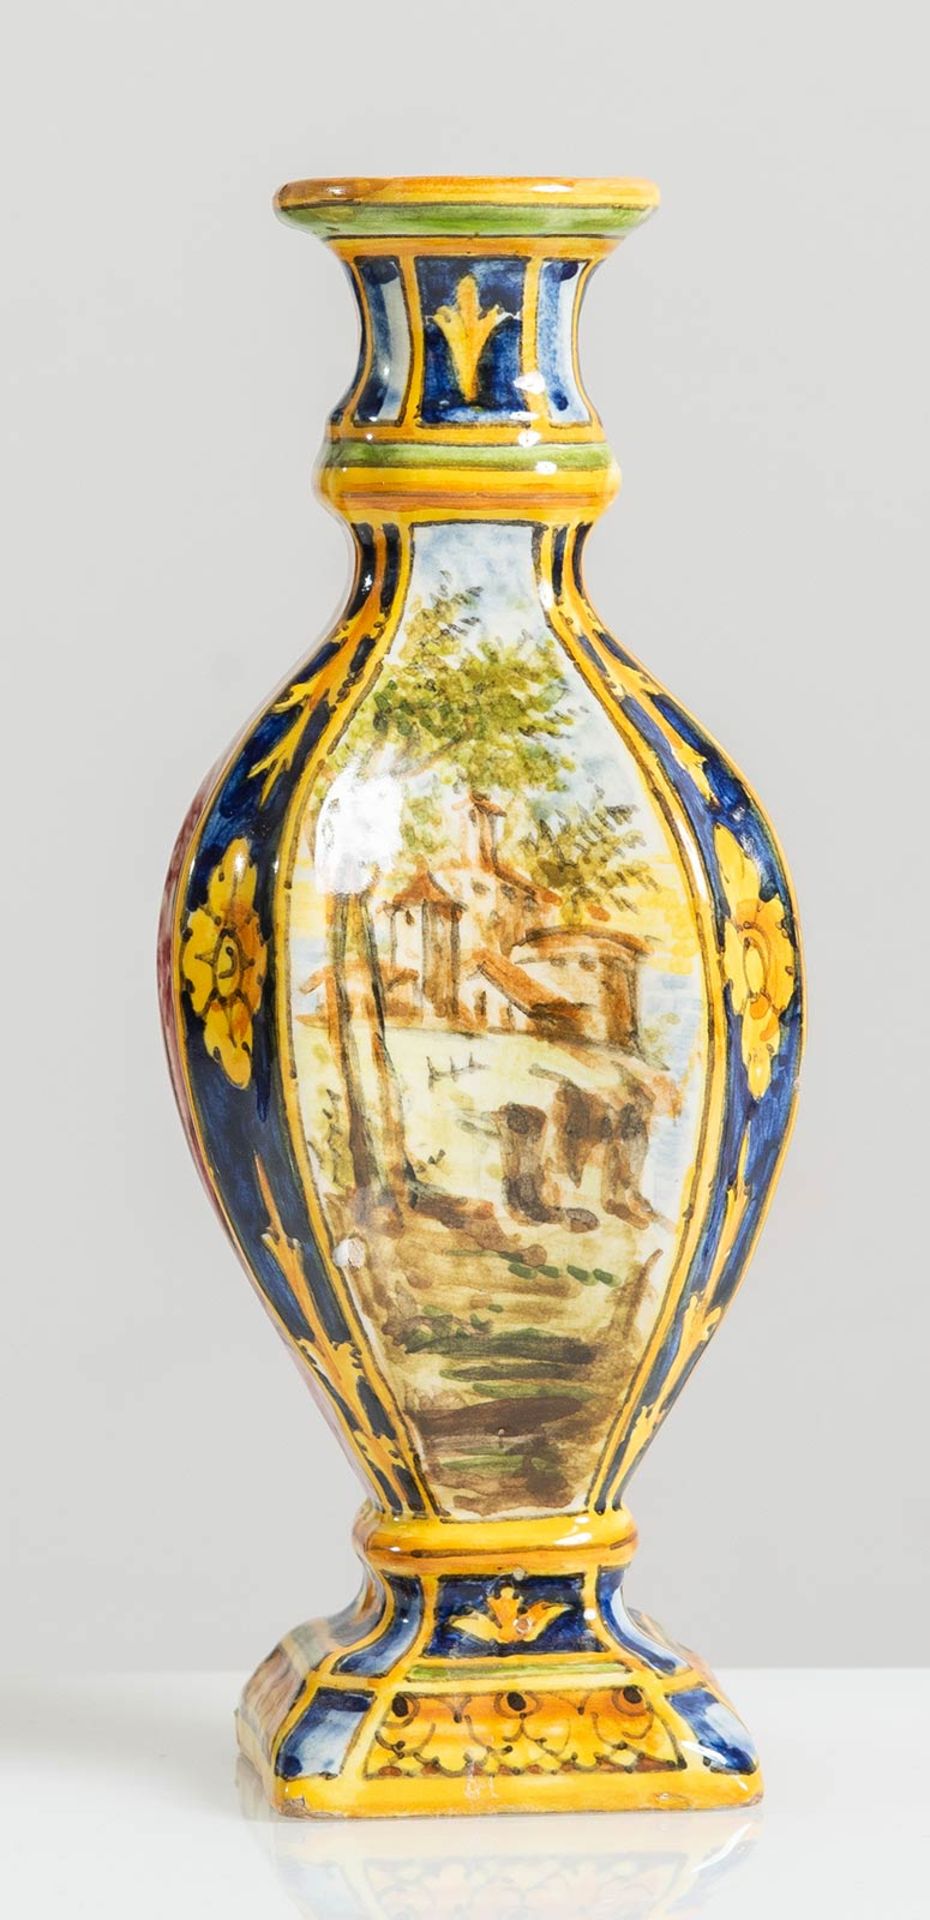 Manifattura Minghetti - Bologna, Piccolo vaso in ceramica policroma, Anni ‘20.